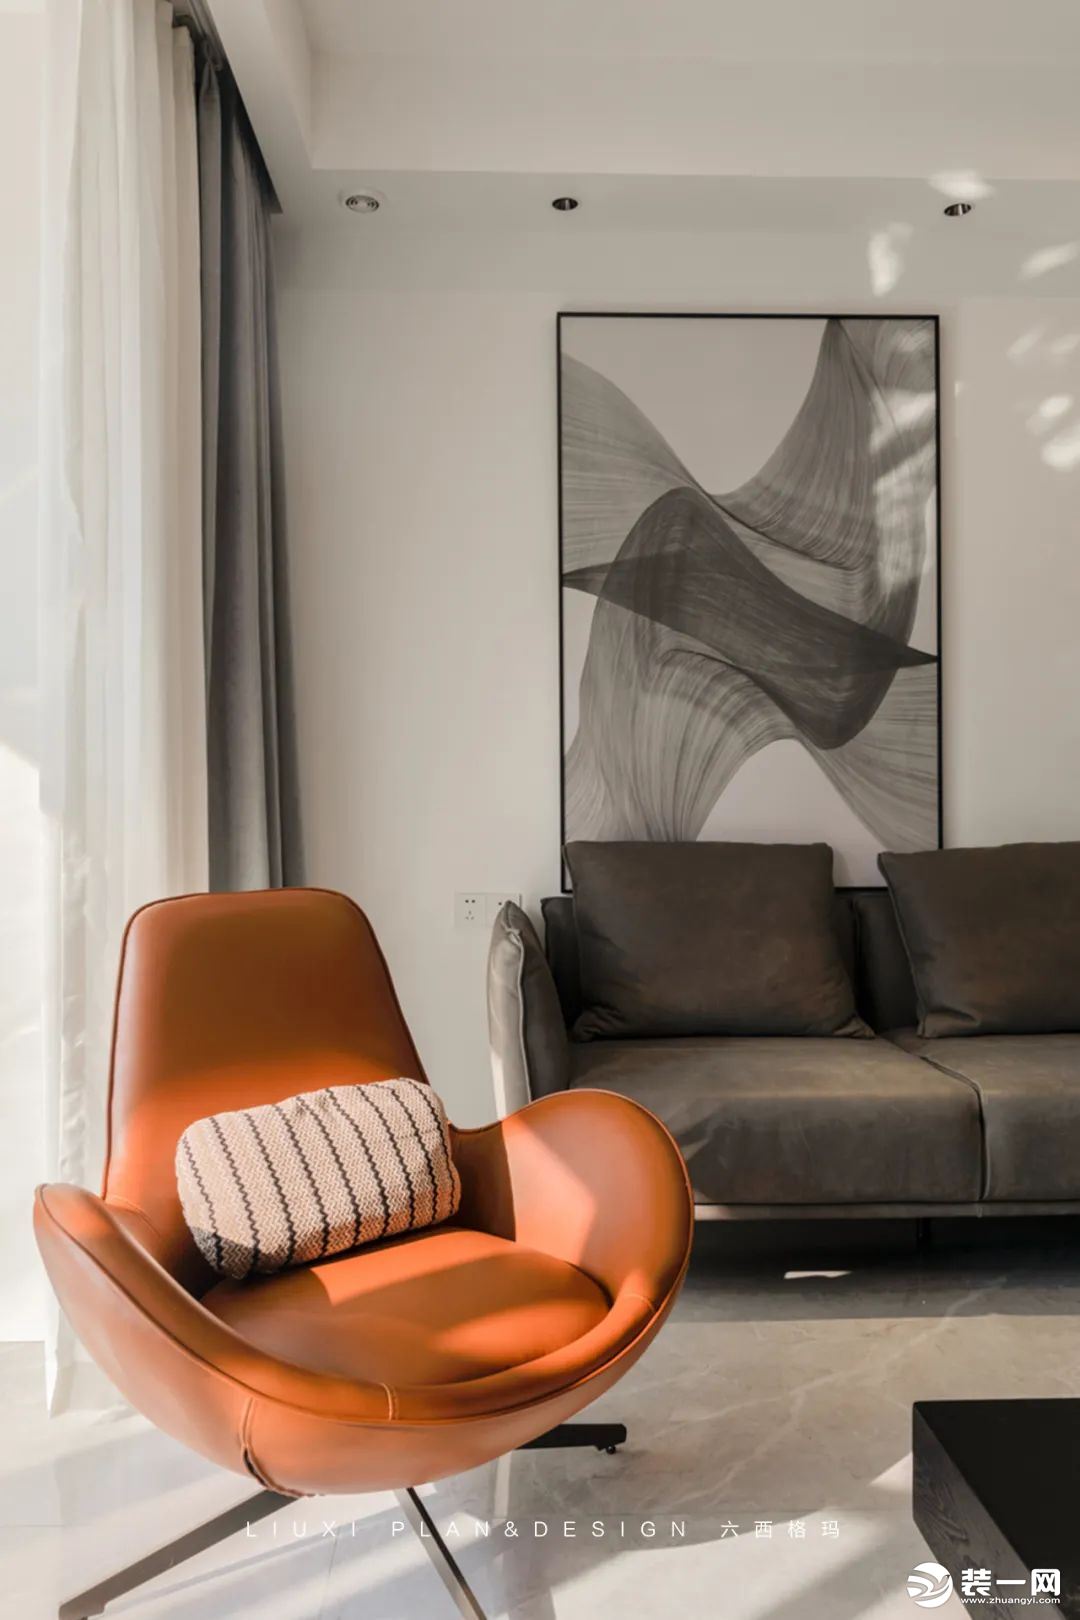 橙色的单椅赋予空间活力色彩，使得灰白空间更温暖。